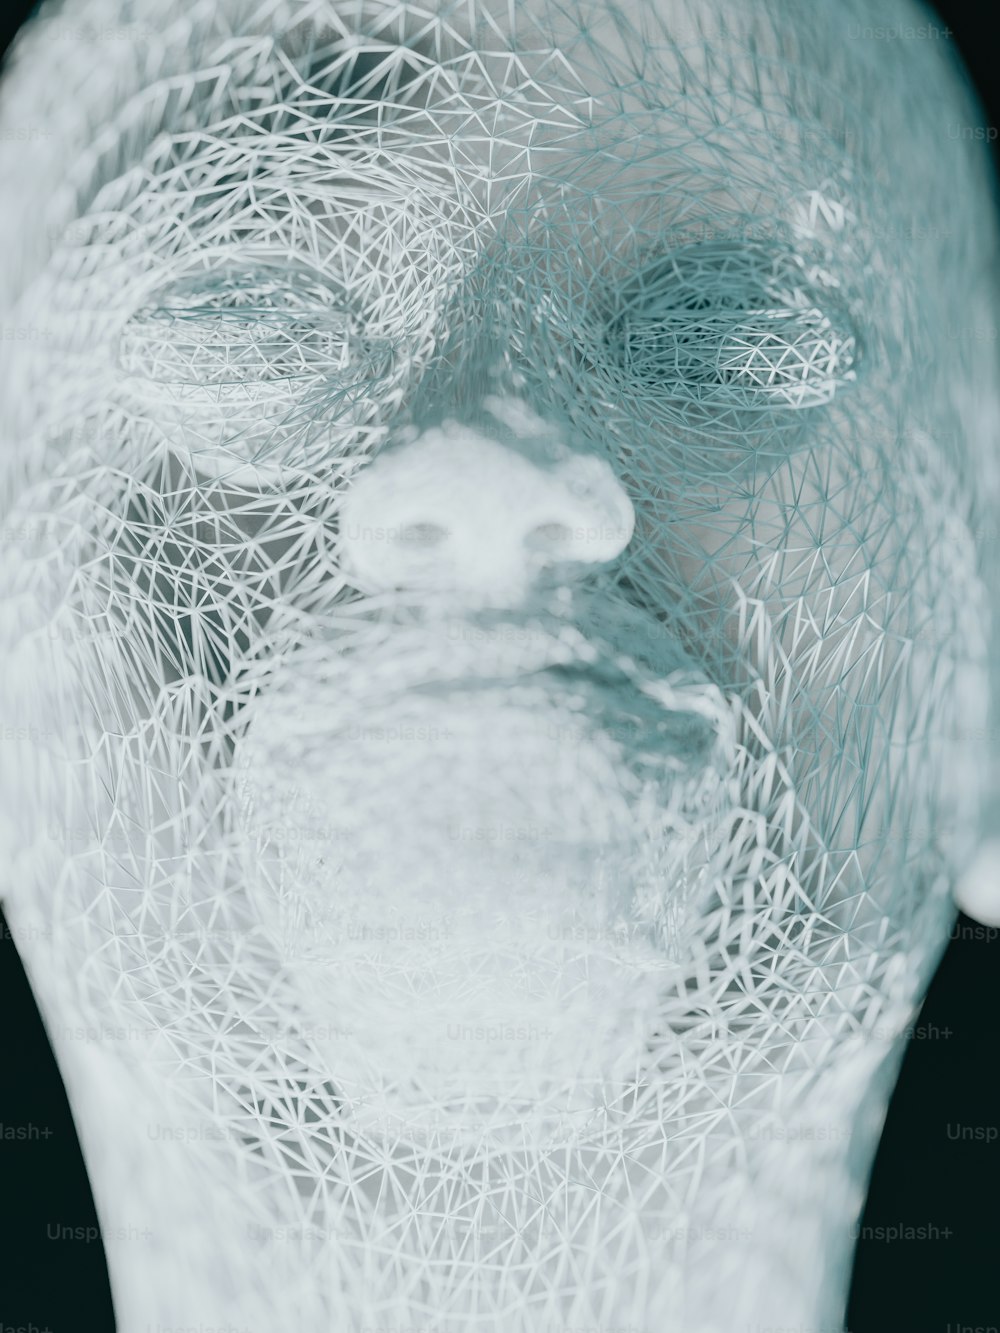 un primo piano del volto di una persona fatto di filo metallico